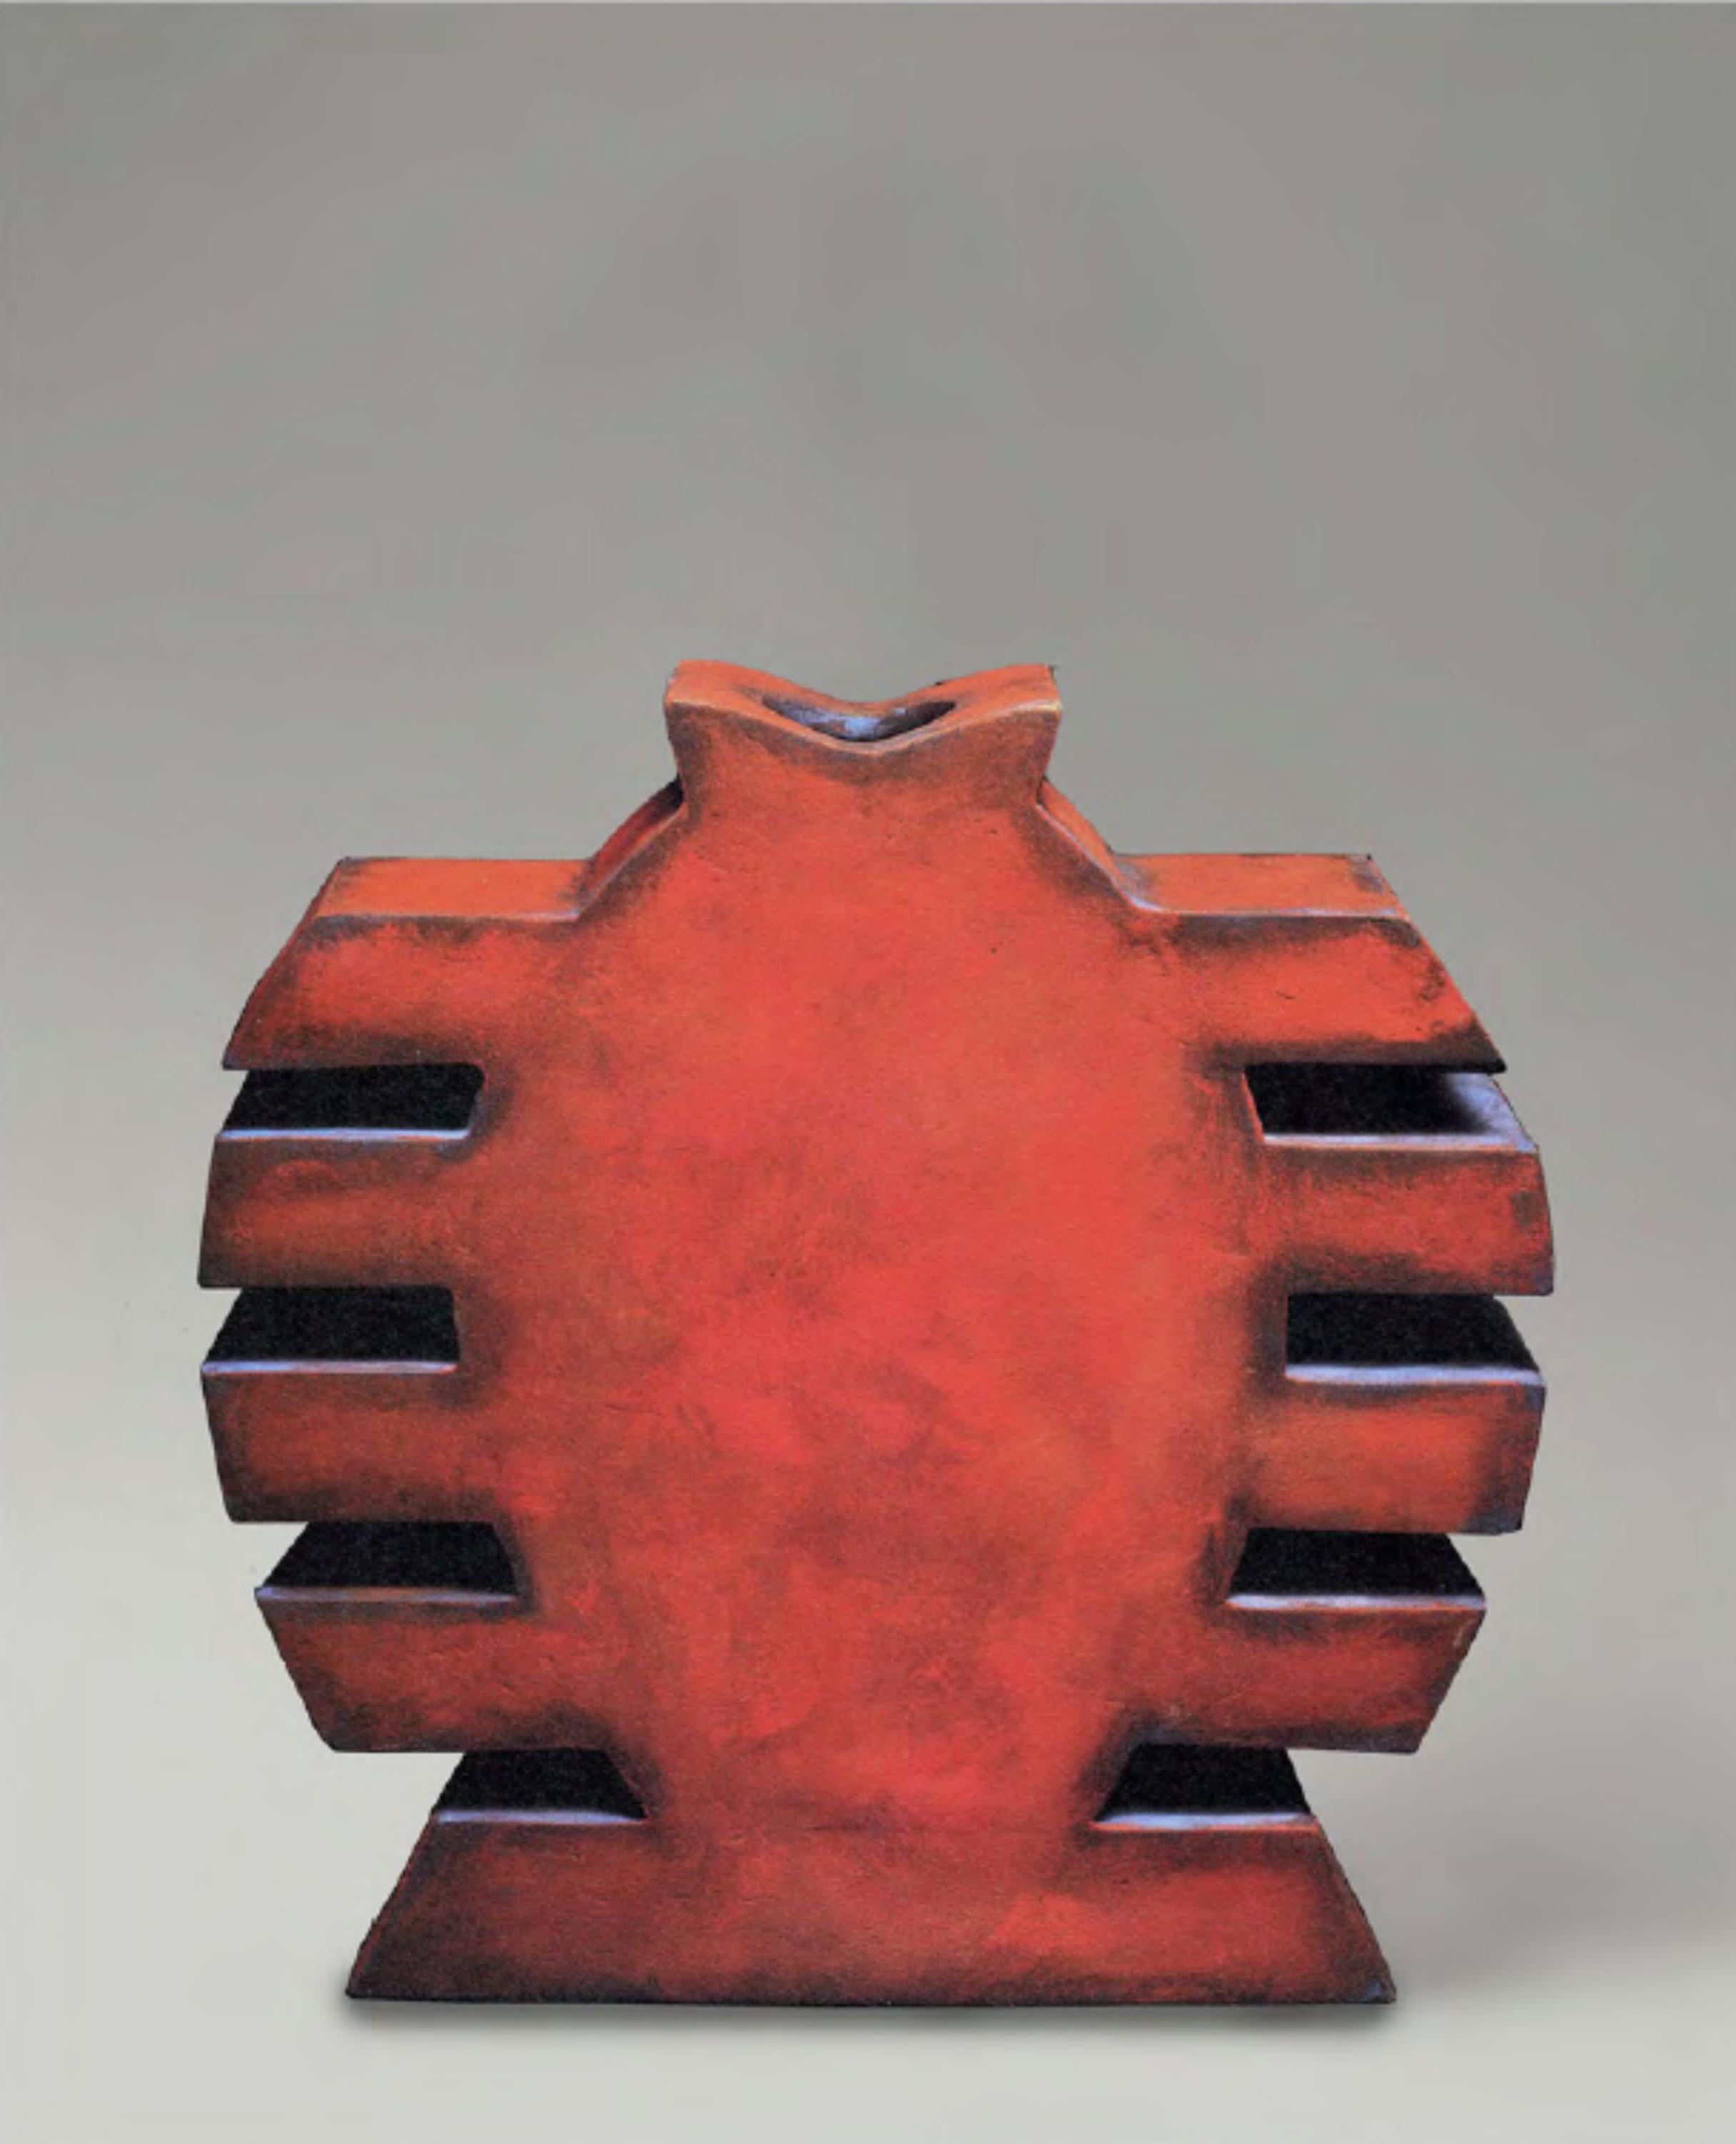 CF Te16 Terre von Caturegli Formica
Abmessungen: B 45 x H 36 cm
MATERIALIEN: Keramik

Terres, Dakar, Senegal, 1987-1991 

TERRES ist eine Serie von symbolischen Keramikskulpturen, die in Dakar, Senegal, im Atelier 